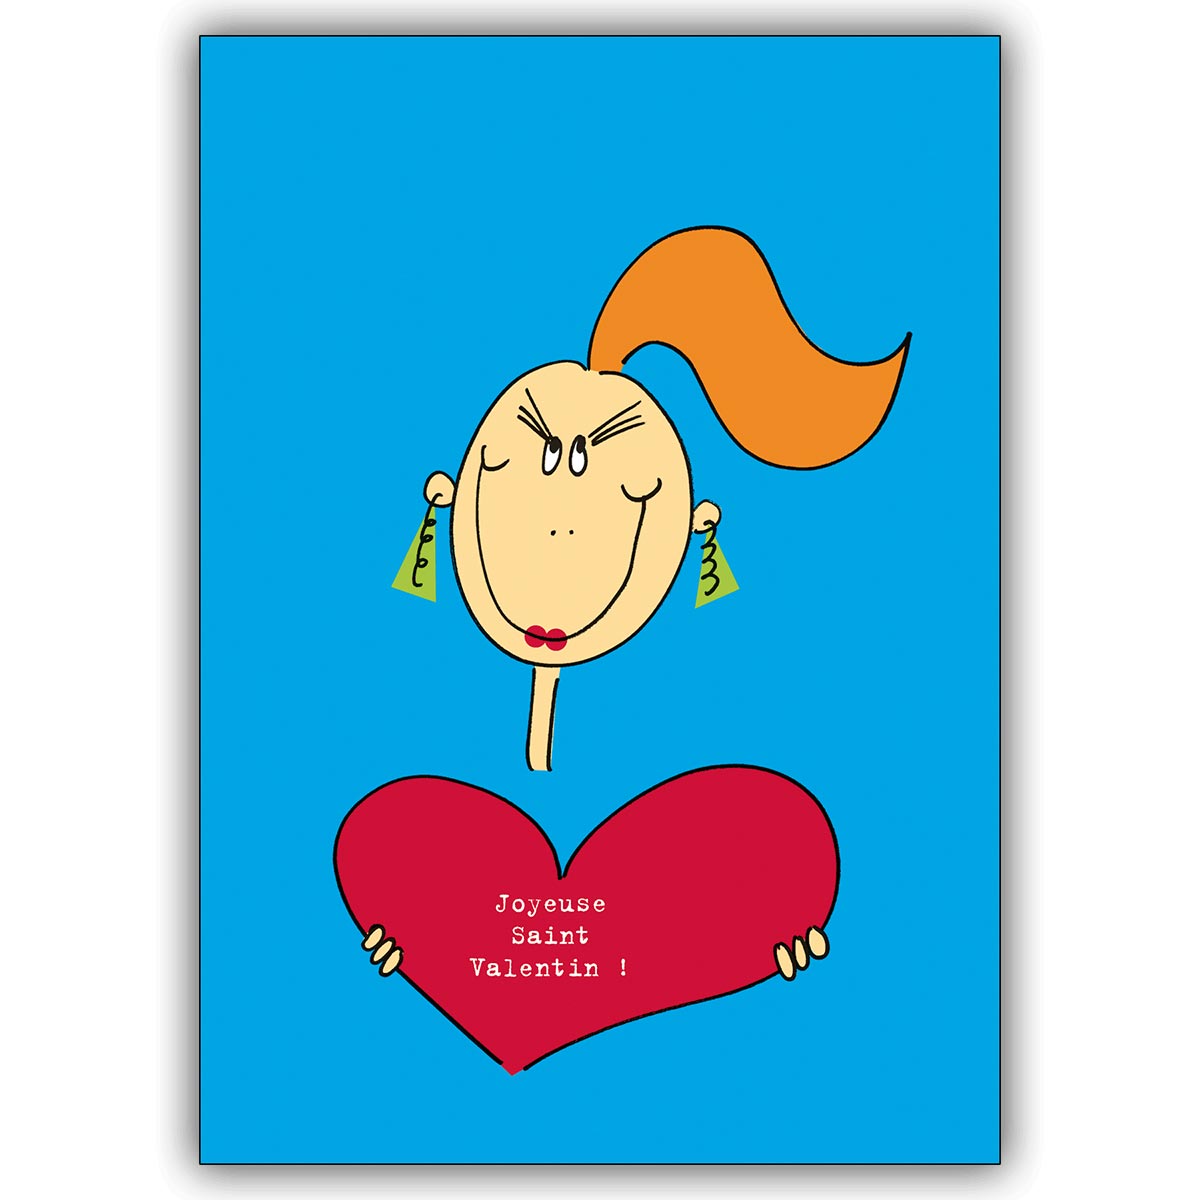 Französische Liebeskarte mit Frau und großem Herz: Joyeuse Saint Valentin!